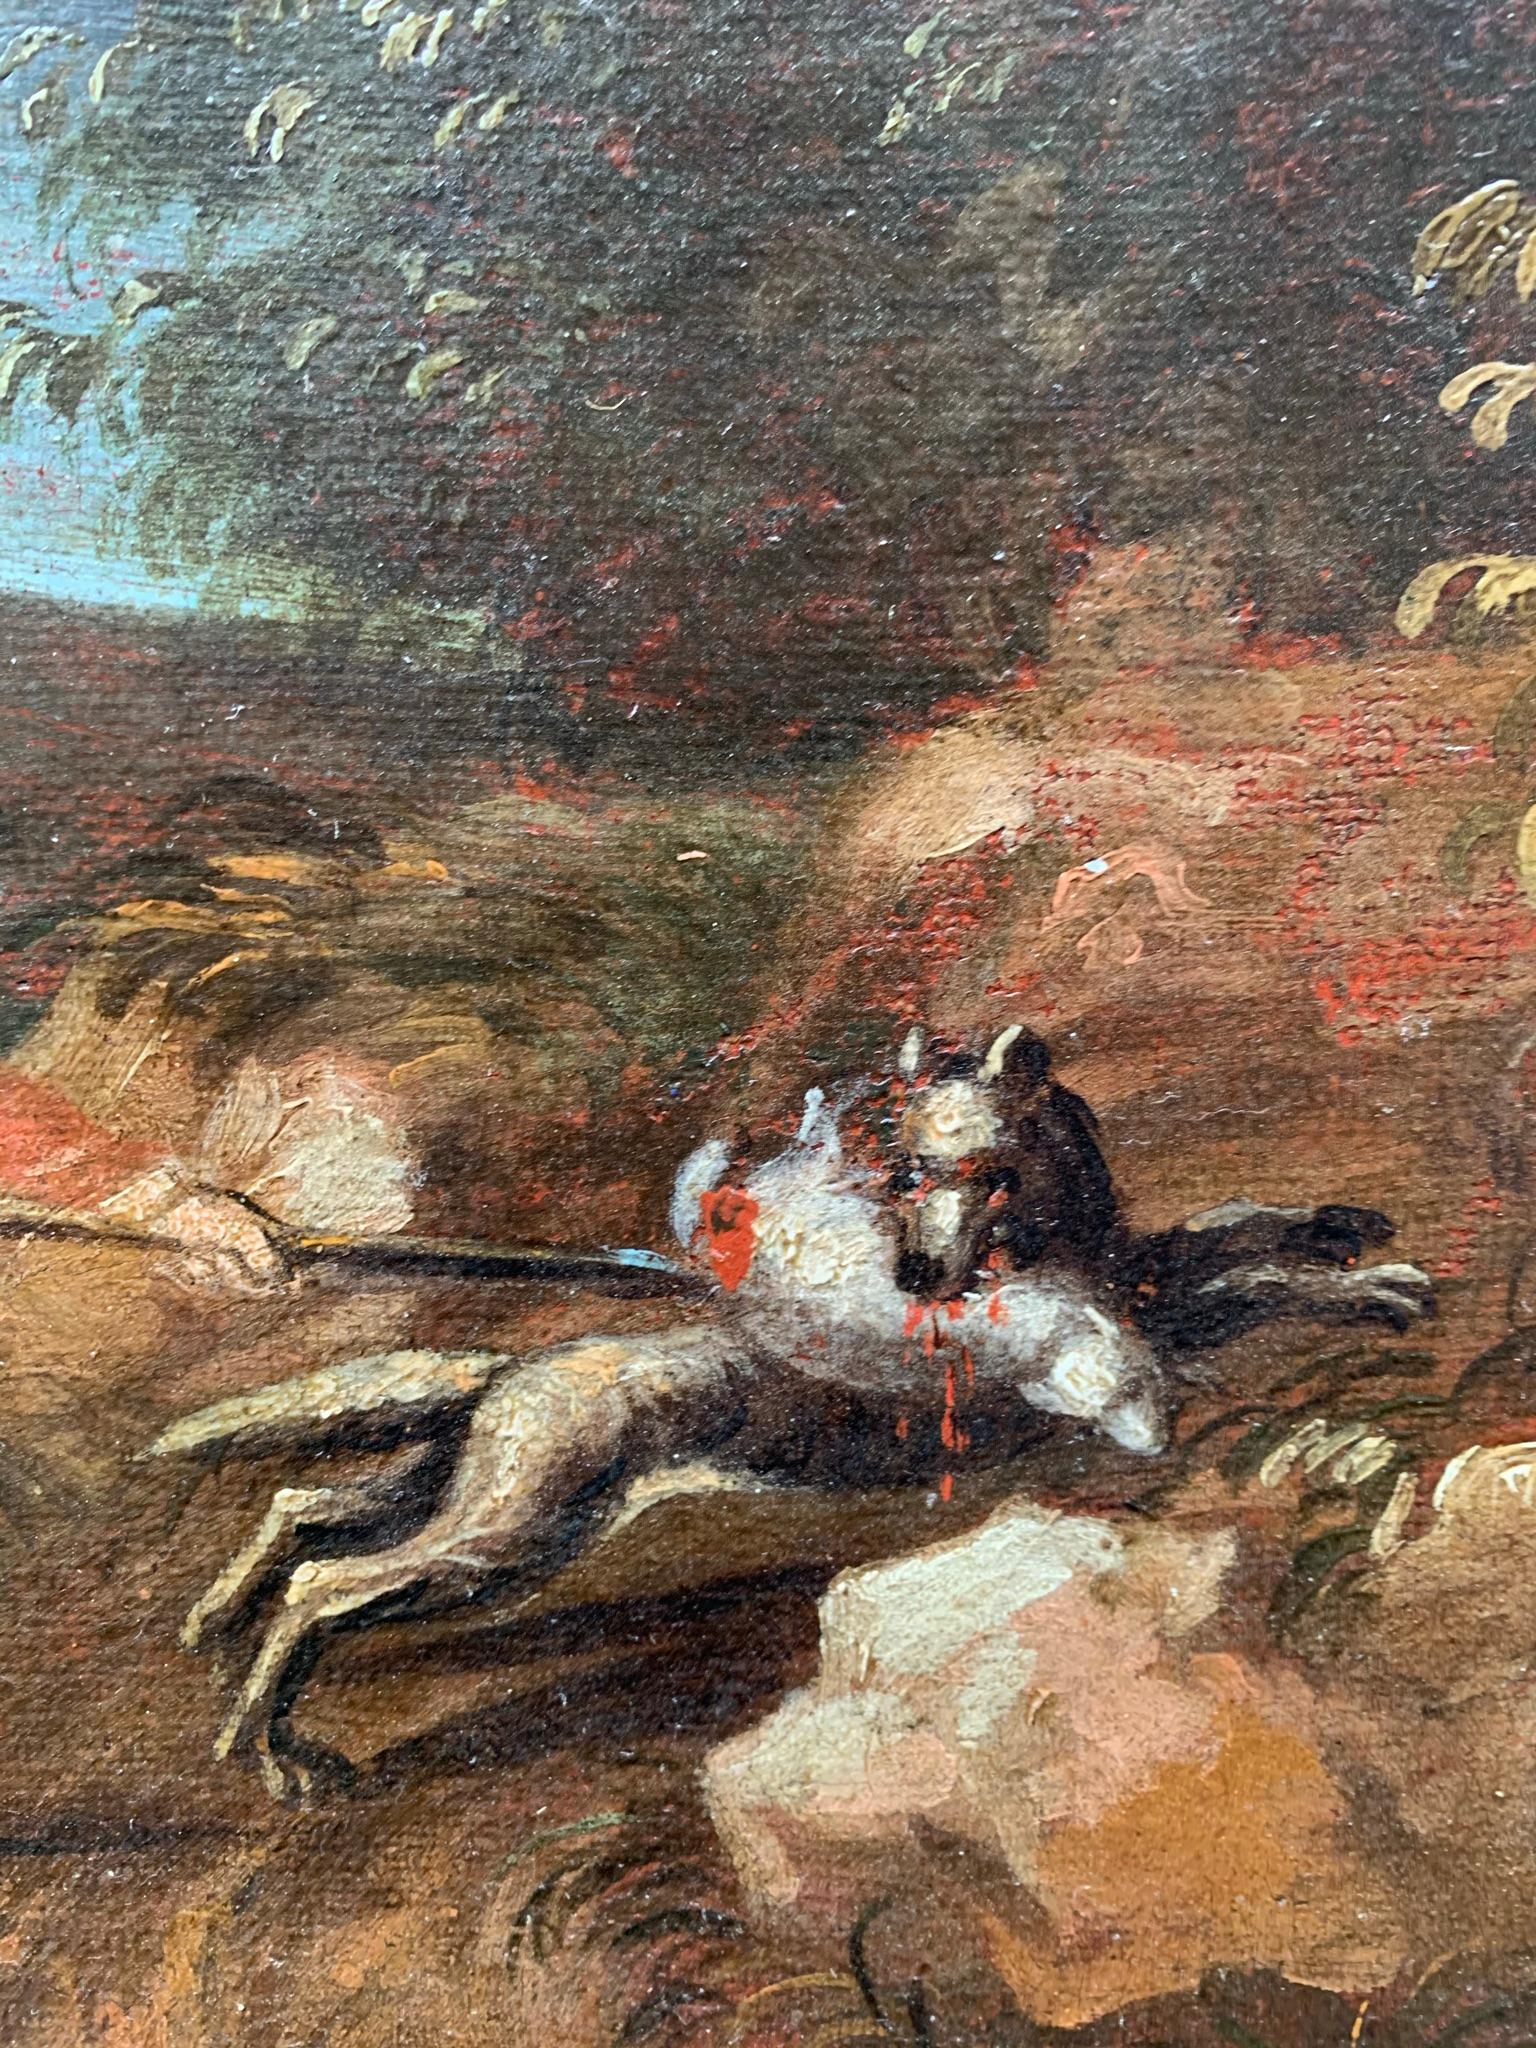 Paysage avec des chasseurs au bord d'un lac.
XVIIIe siècle.
Peinture à l'huile sur toile, de l'école française ou italienne du Nord, époque Louis XV.
Probablement une partie de la décoration d'une porte dans un intérieur d'une villa à la